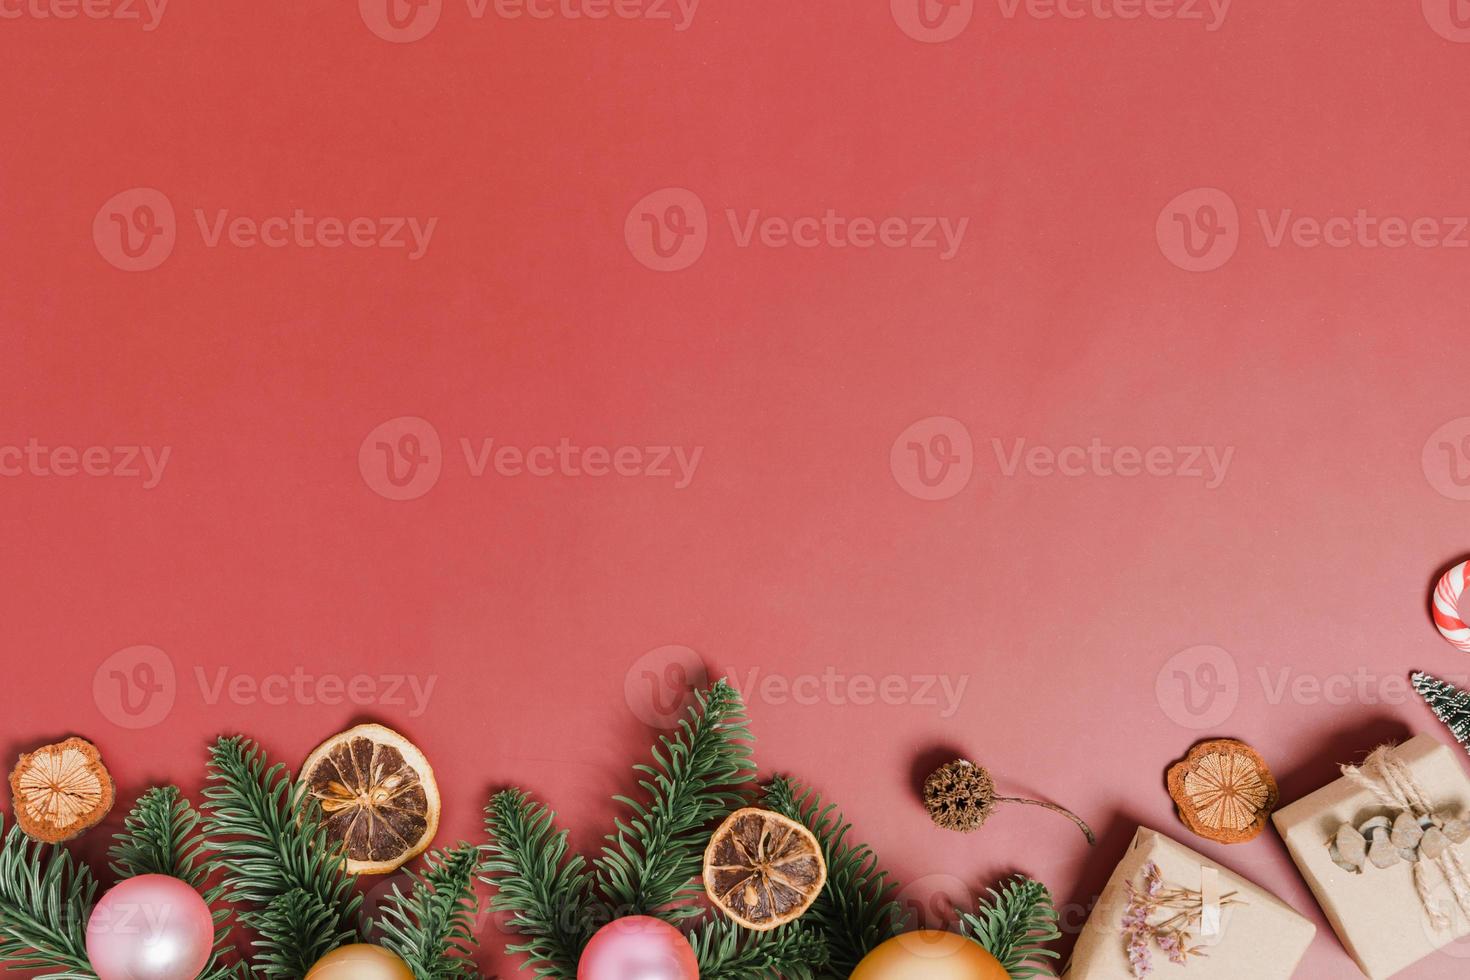 minimale creatieve platte lay van traditionele kerstcompositie en nieuwjaarsvakantieseizoen. bovenaanzicht winter kerstversiering op rode achtergrond met lege ruimte voor tekst. kopieer ruimtefotografie. foto